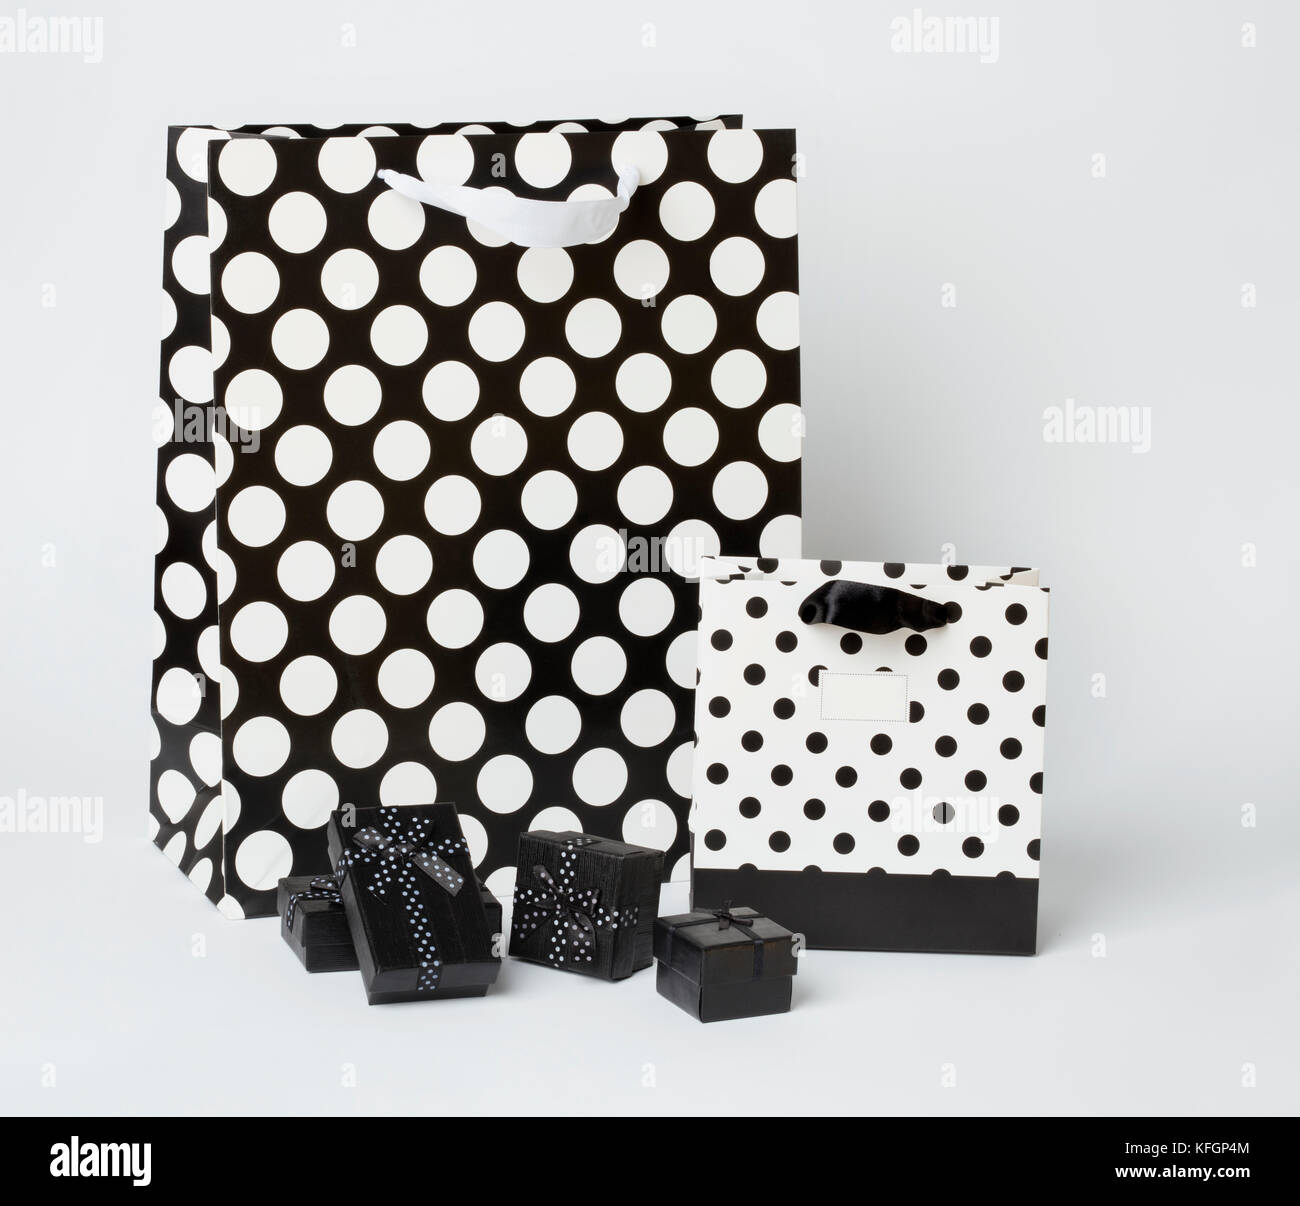 Klein, schwarz Geschenk-Boxen mit schwarzen und weißen Geschenk - Taschen mit Polka Dots, auf weißem Hintergrund. Stockfoto